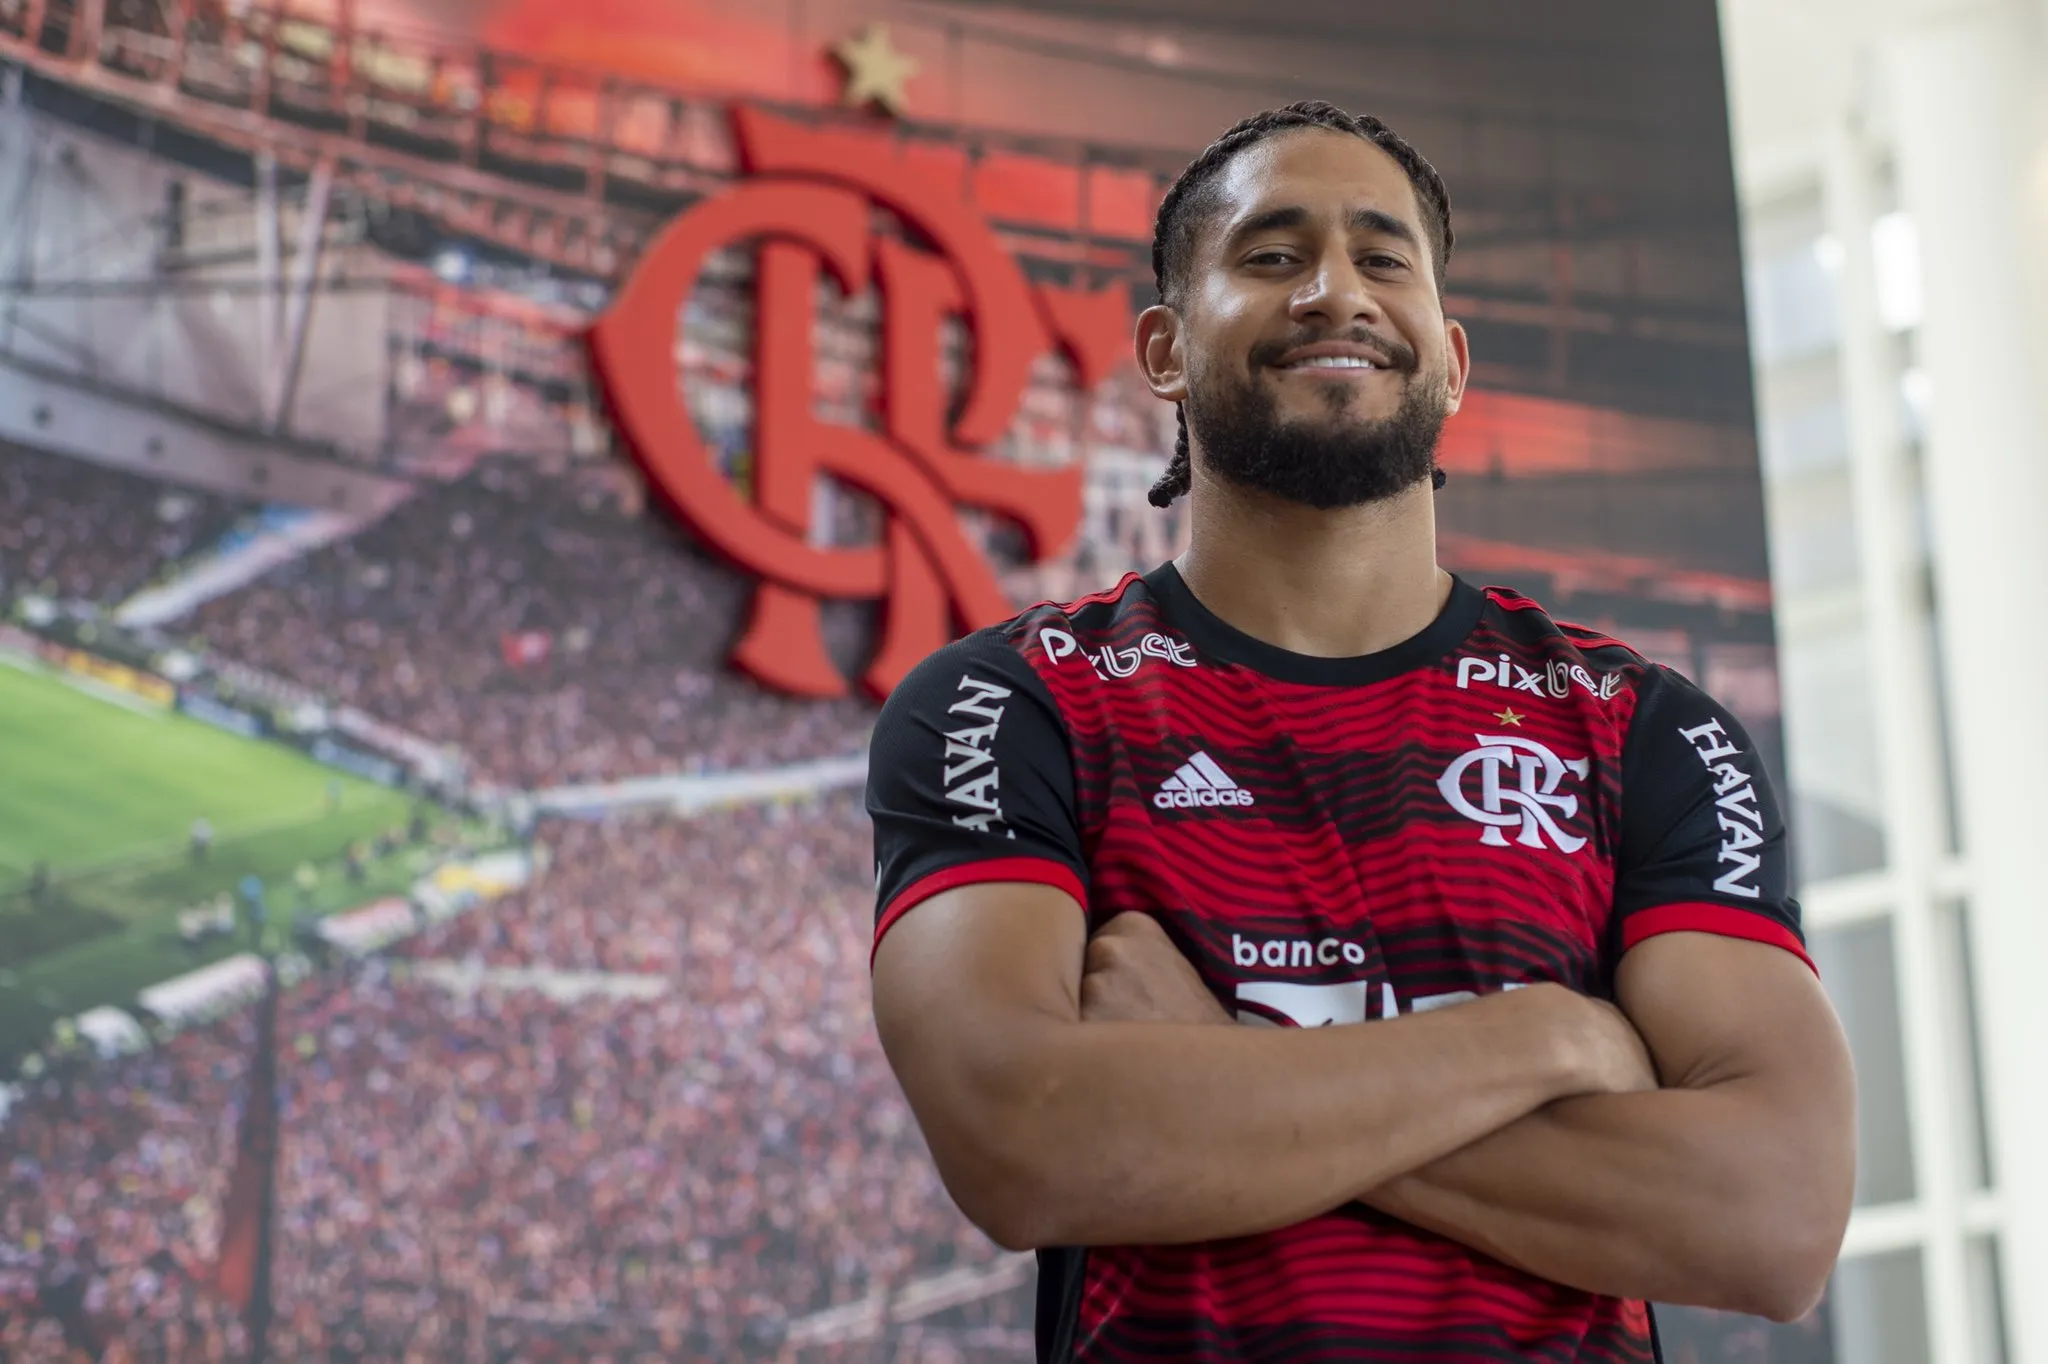 Zagueiro Pablo assinou por três anos com o Flamengo.